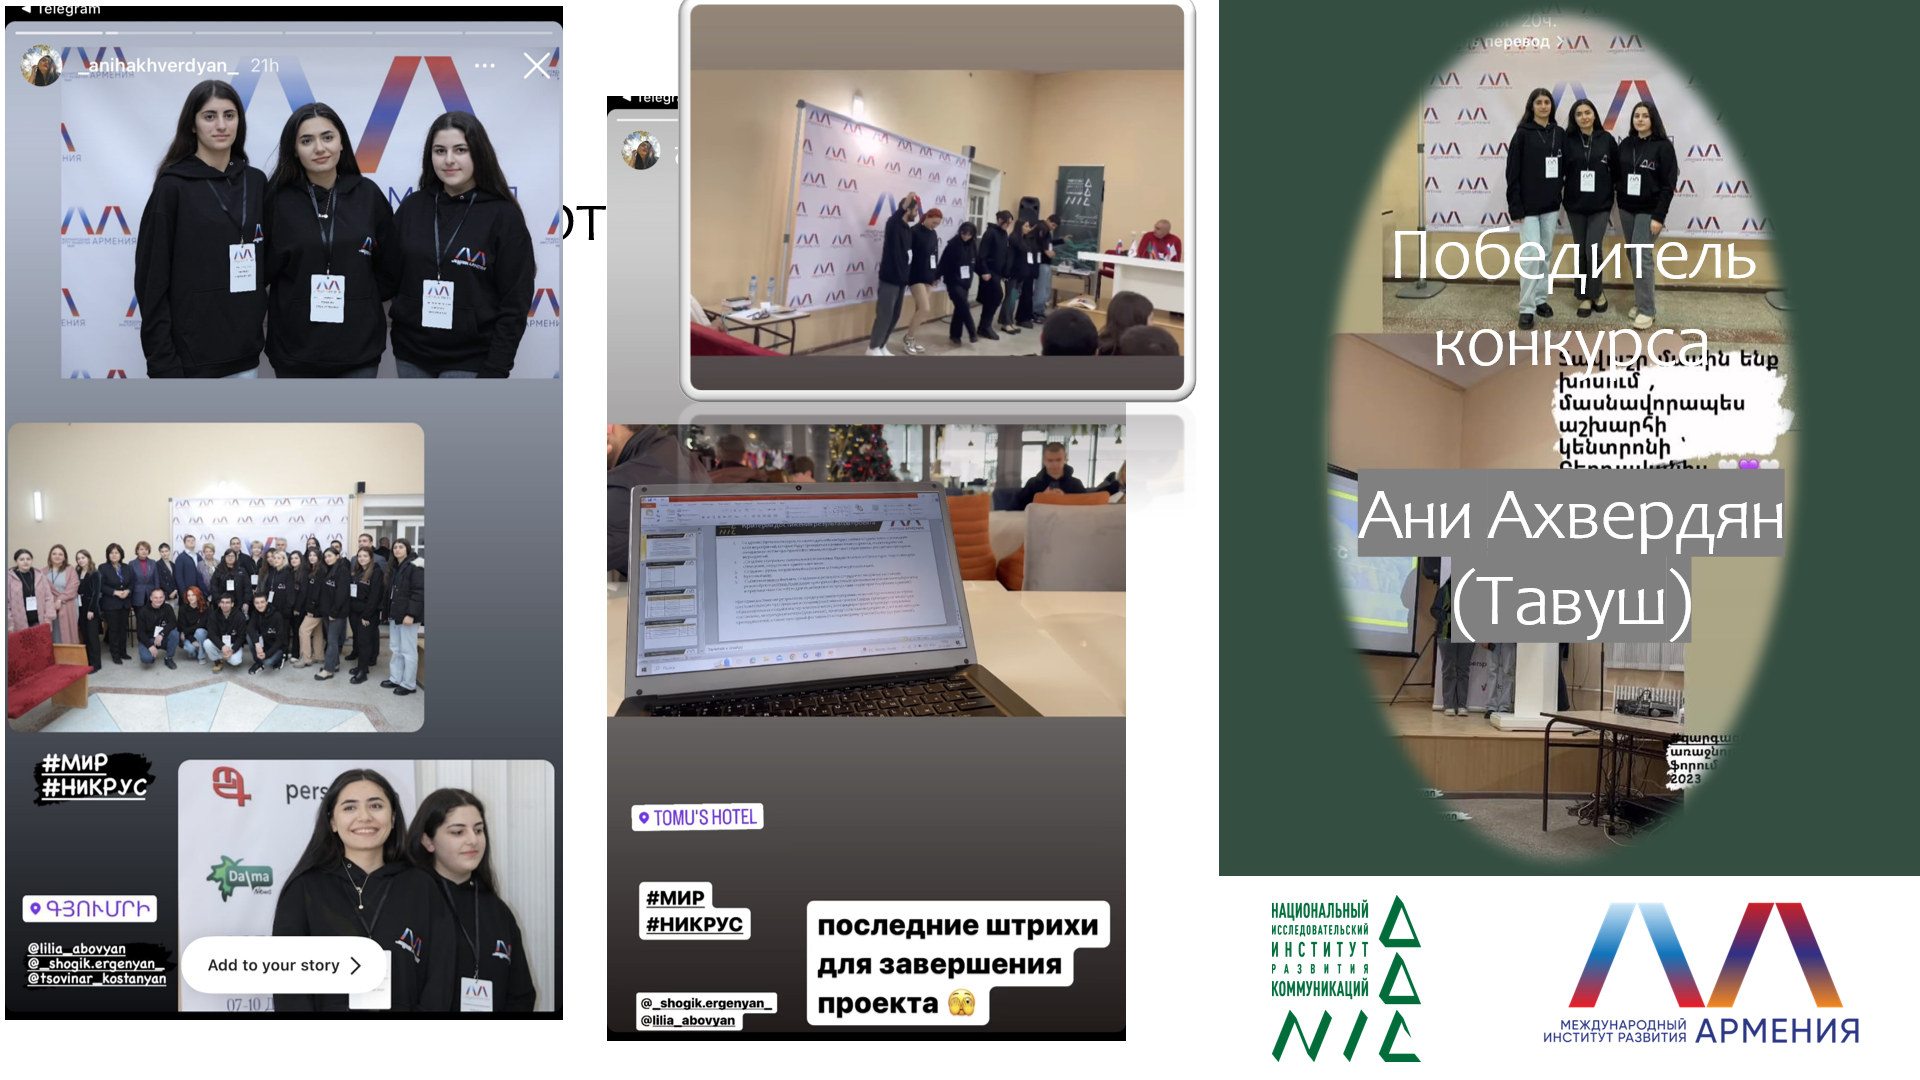 НИИРК – Конкурс на лучшее медиа-освещение Форума лидеров развития в Армении